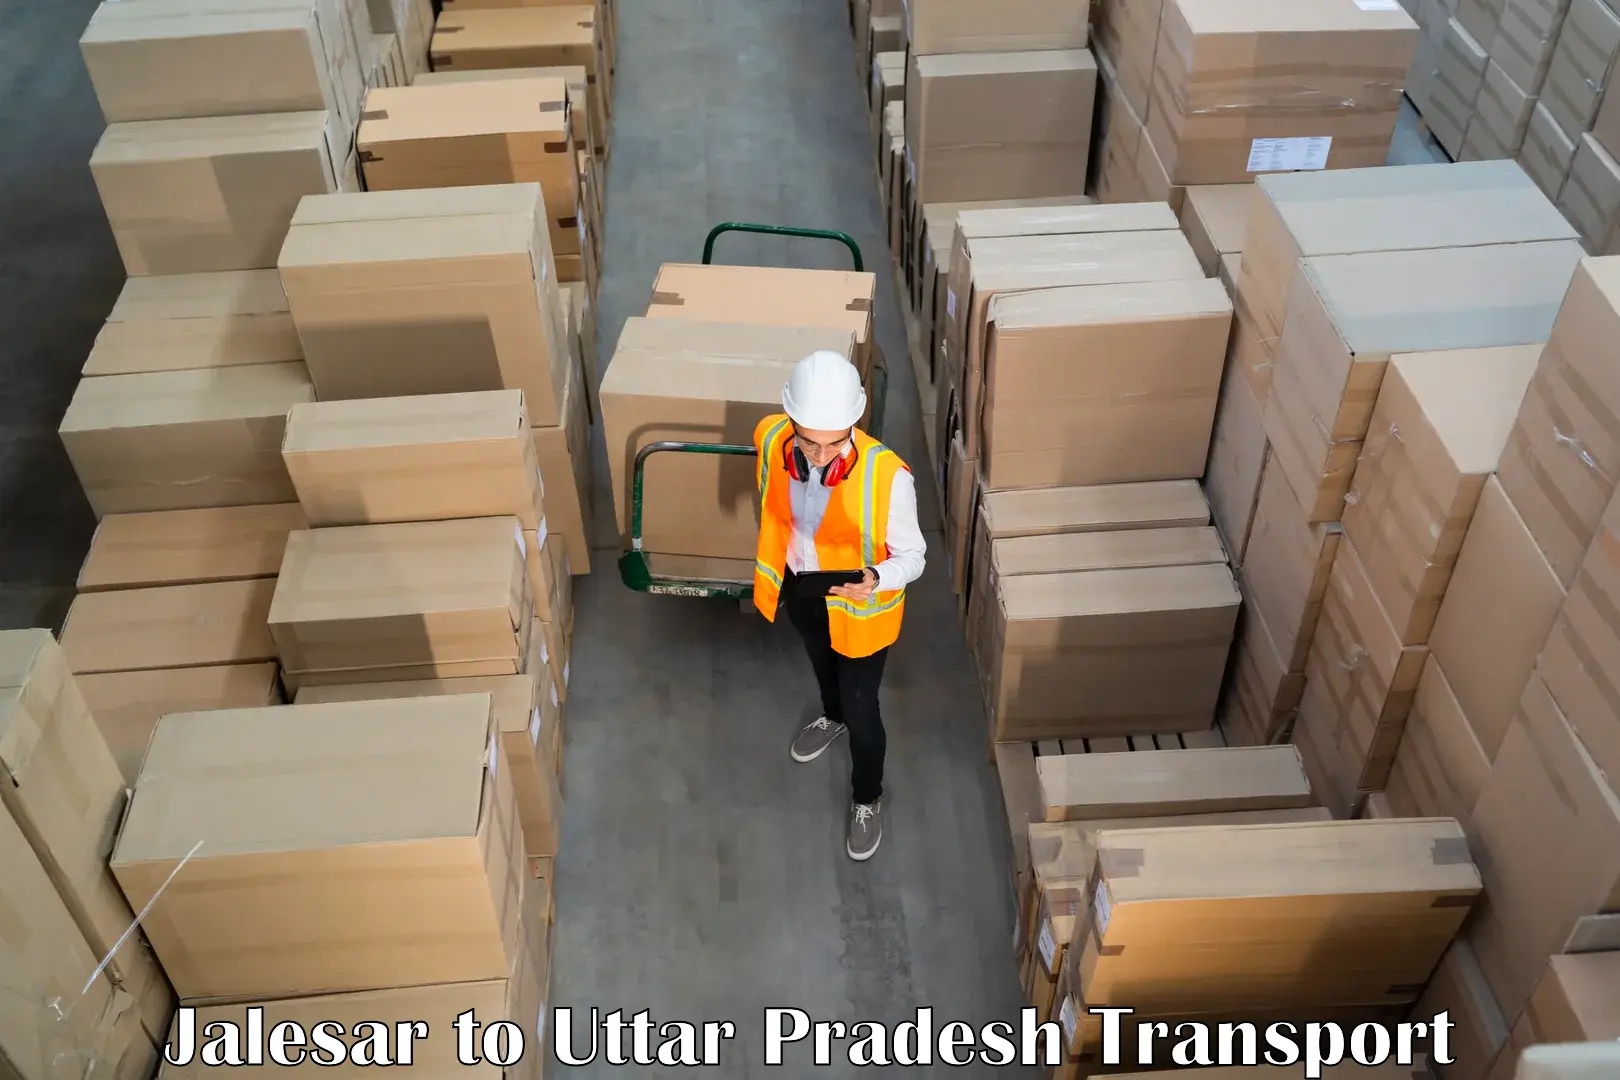 Cargo transport services Jalesar to Sahatwar